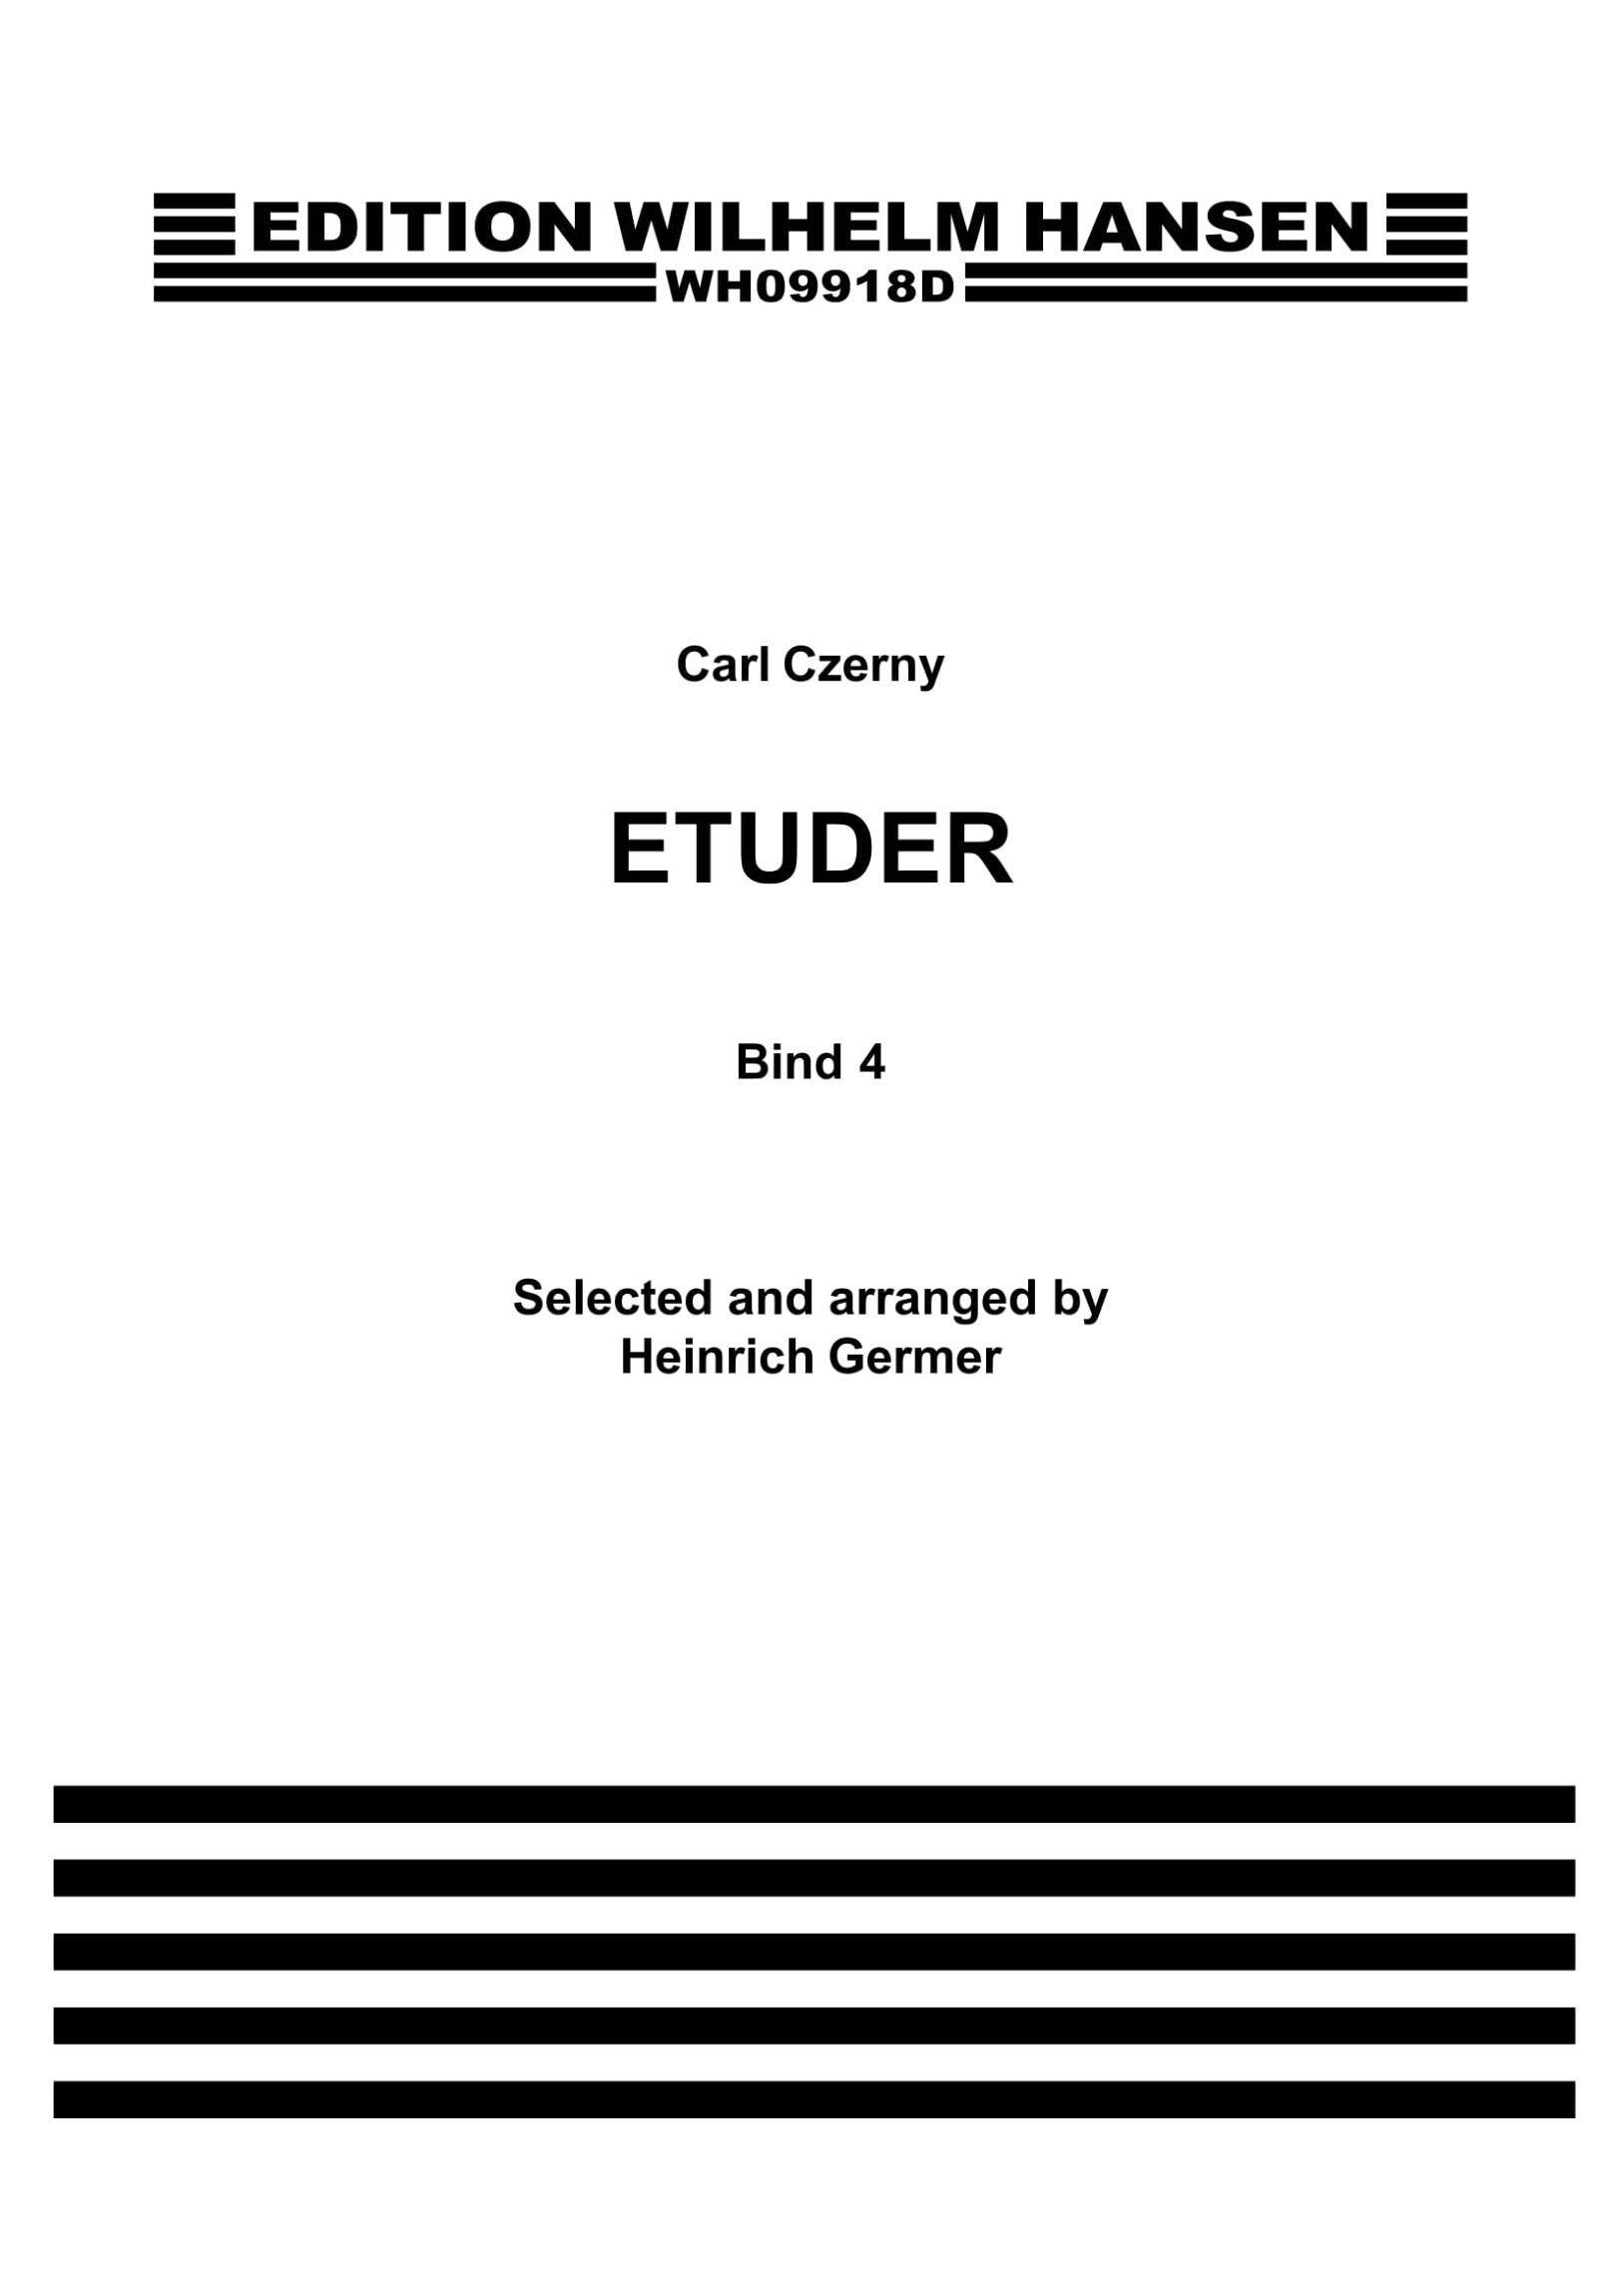 Edition Wilhelm Hansen Czerny-Germer Etudes 4 : photo 1